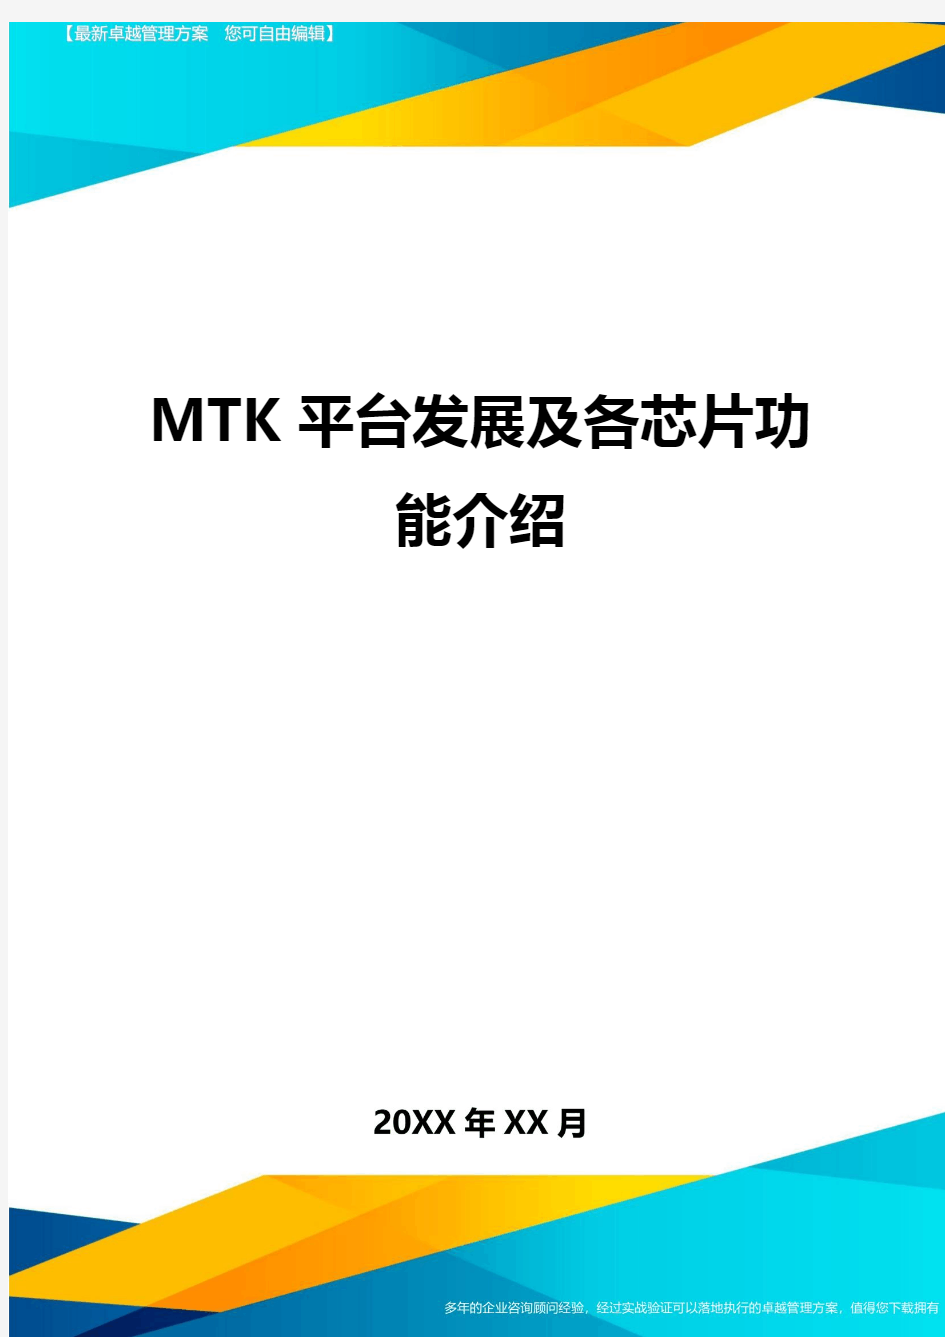 MTK平台发展及各芯片功能介绍方案